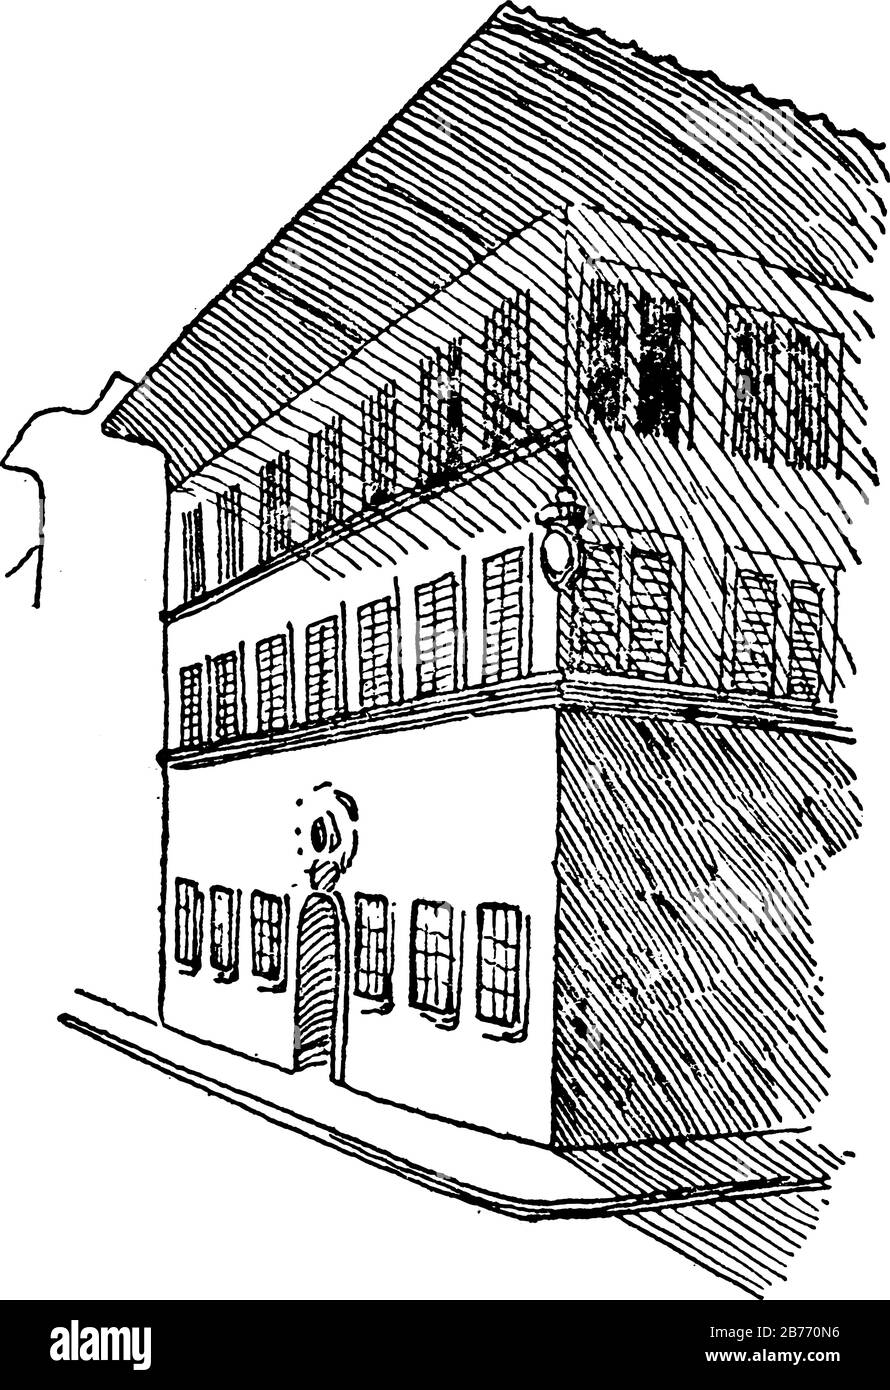 La maison de Michel-Ange à Florence, Italie. Montrant trois images de bâtiment italien en elle, dessin ou gravure vintage de ligne Illustration de Vecteur